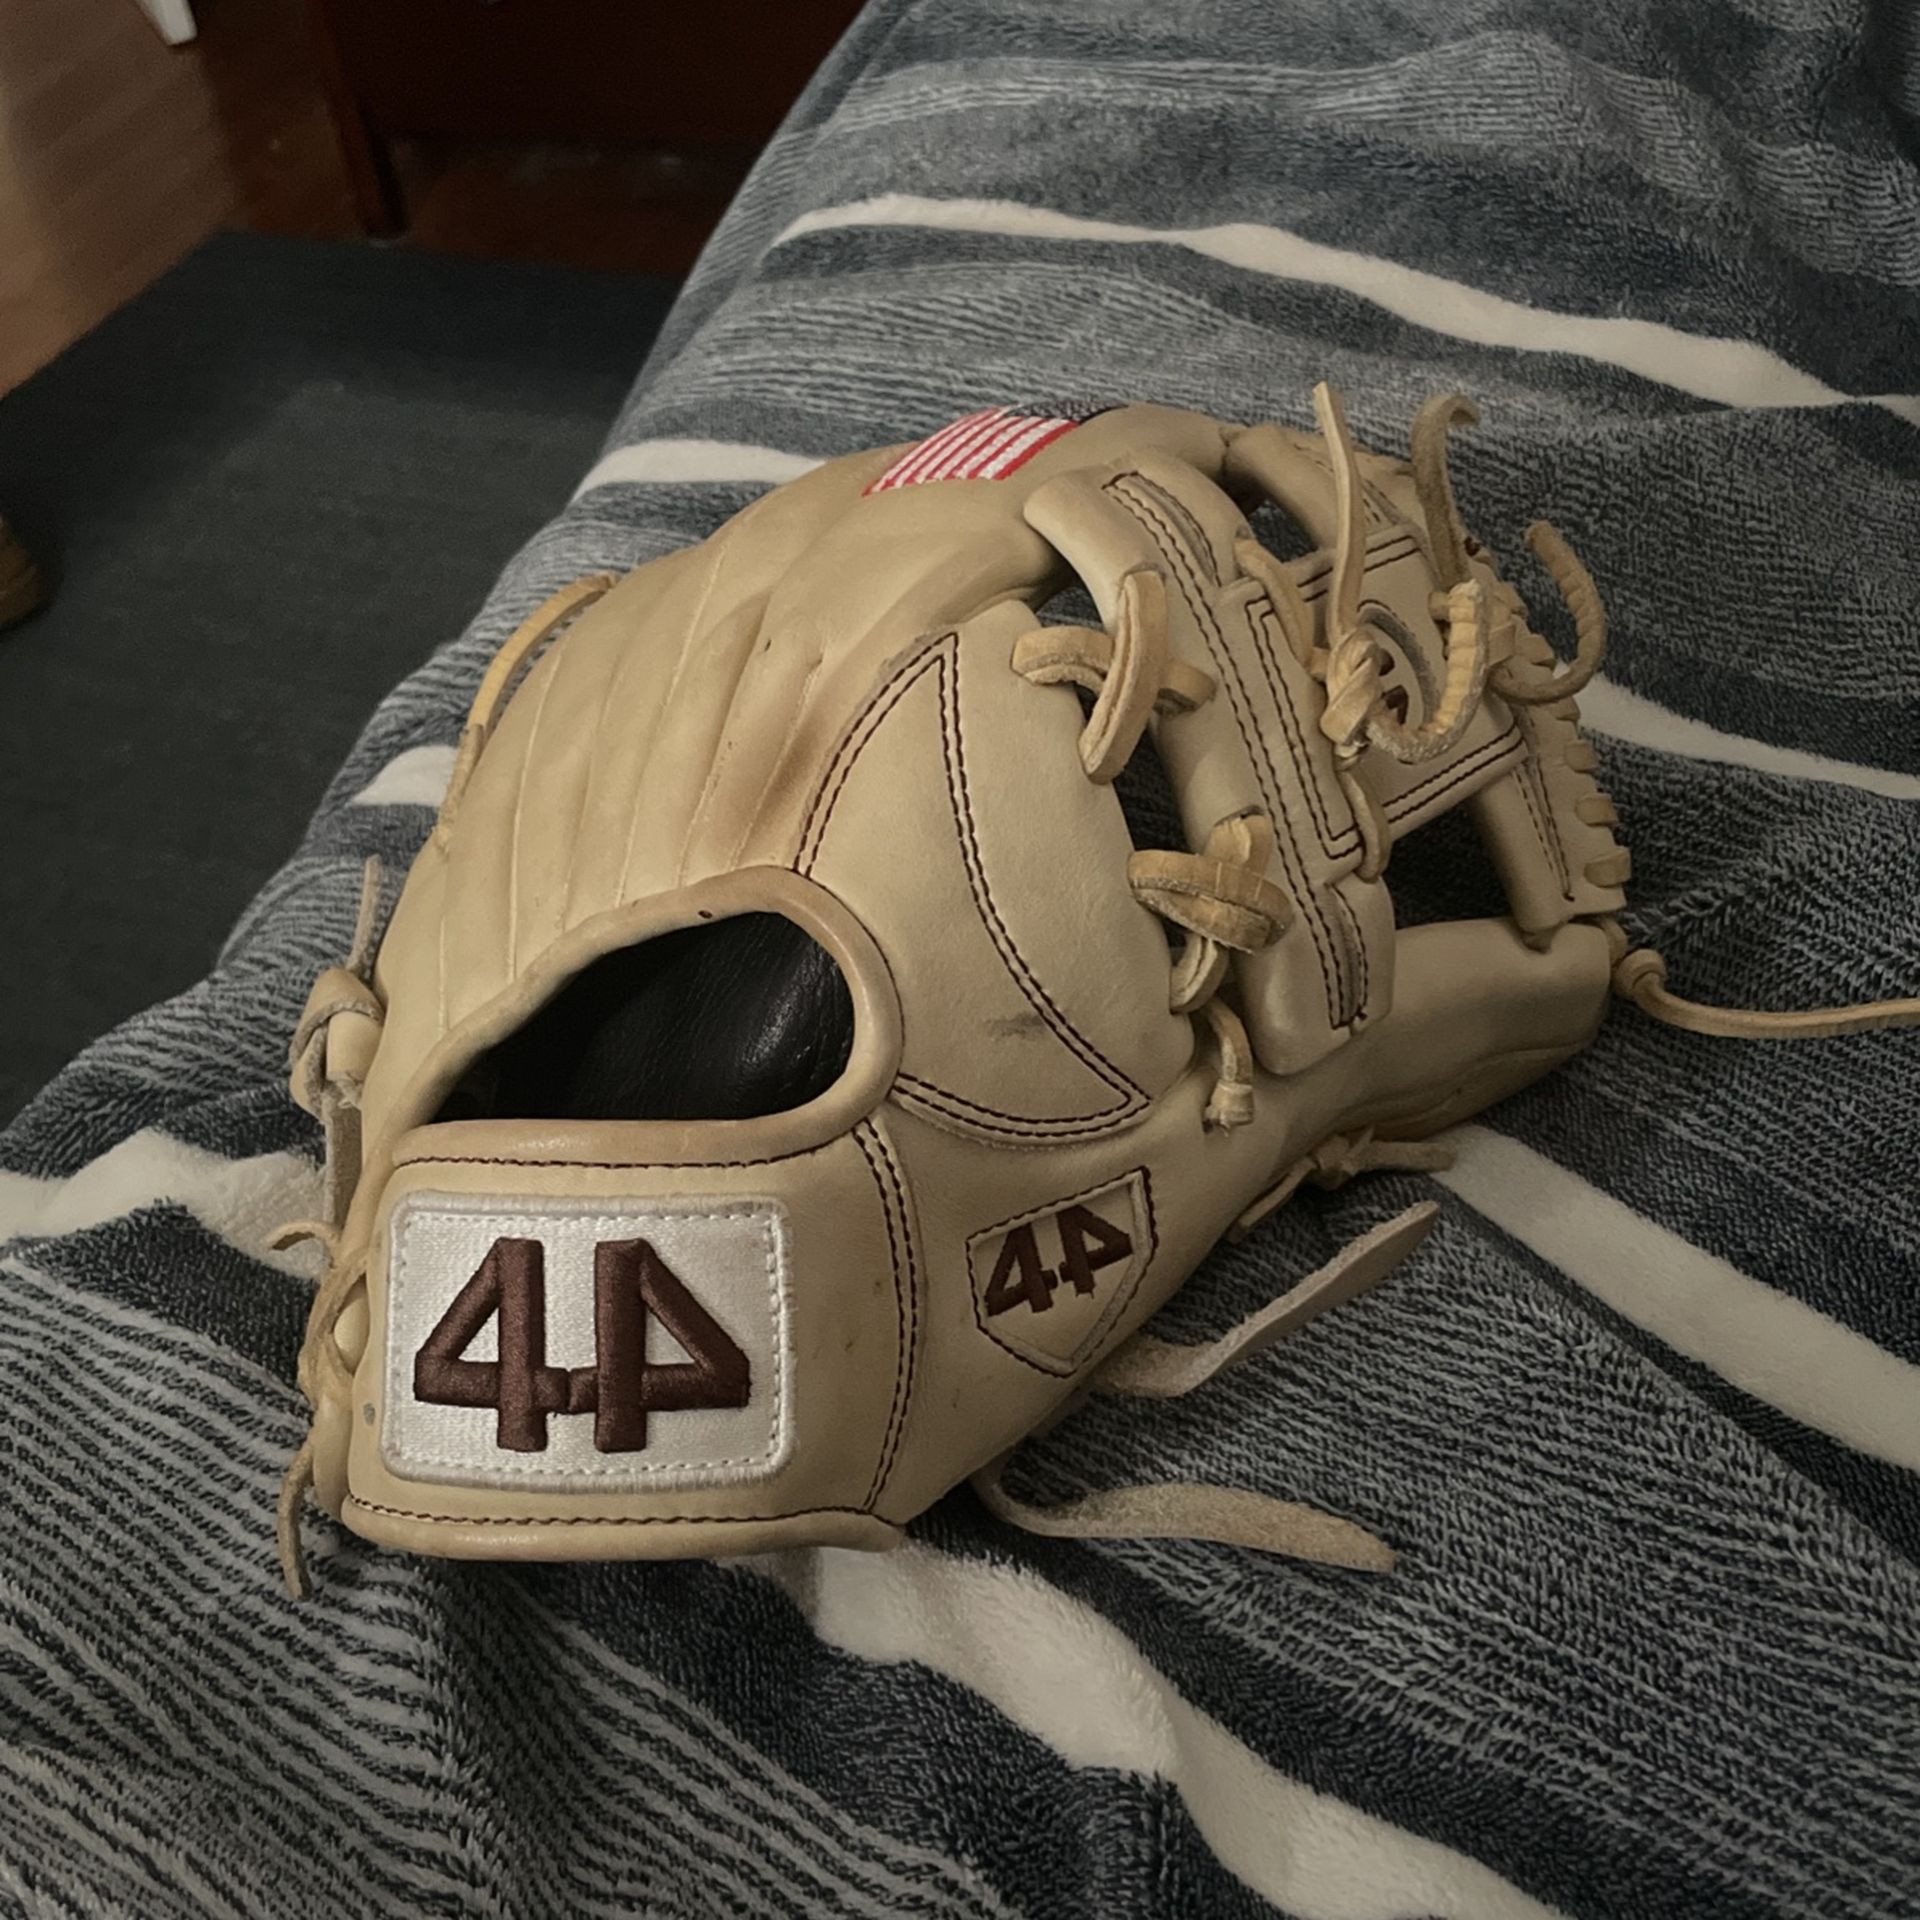 44 baseball glove 